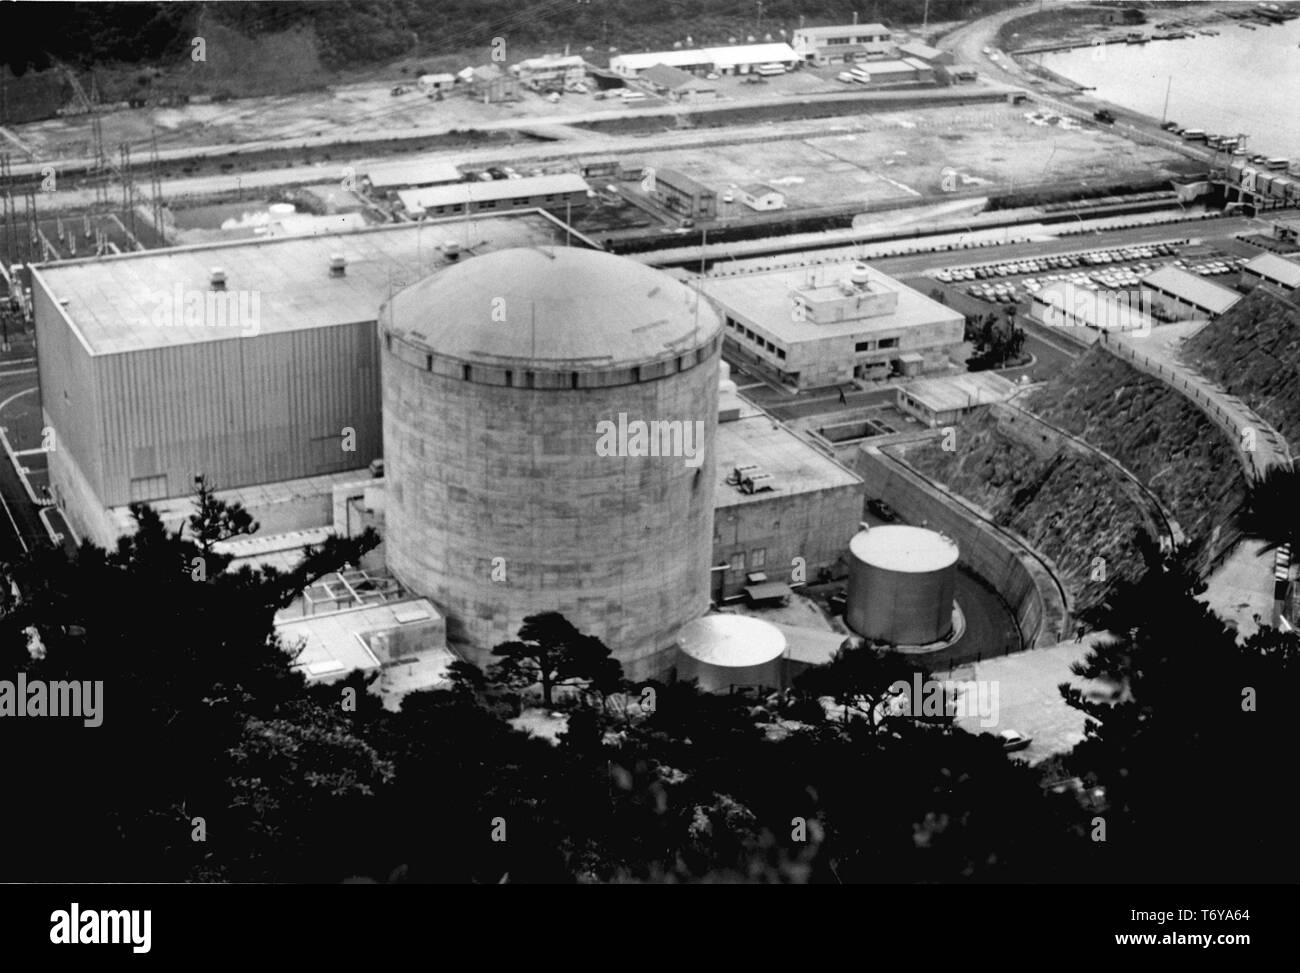 Luftaufnahme der Tsuruga Kernkraftwerk, von Japan Atomic Power Company (JAPCO), Tsuruga, Japan, 1971 betrieben. Mit freundlicher Genehmigung des US-Ministeriums für Energie. () Stockfoto